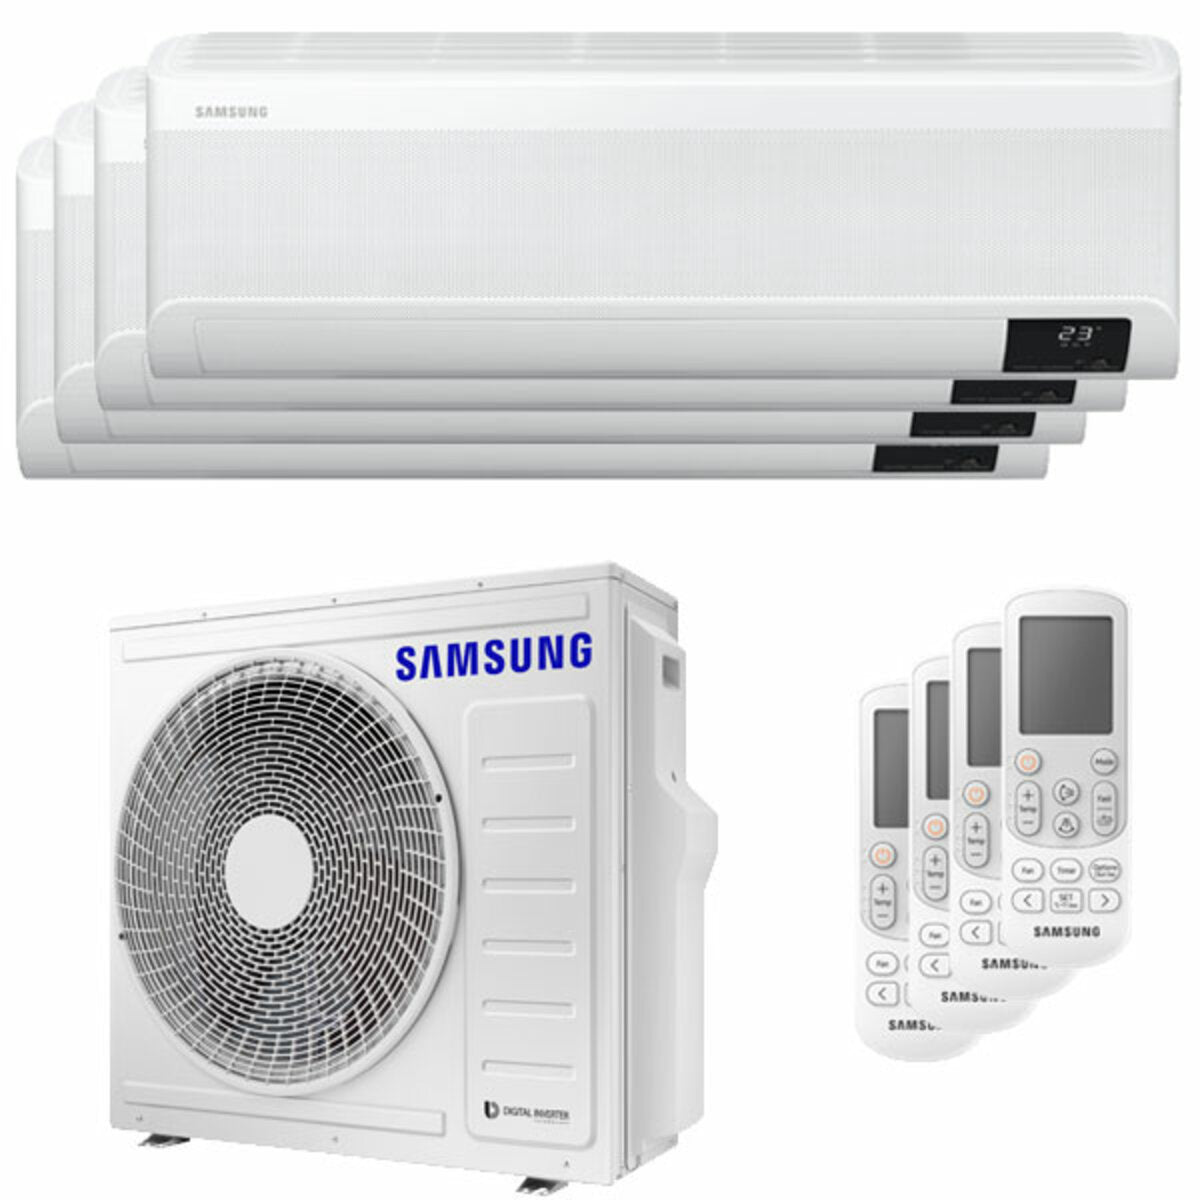 Samsung windfreie Klimaanlage Avant Quadri Split 9000 + 9000 + 9000 + 12000 BTU Inverter A++ WLAN Außengerät 8,0 kW